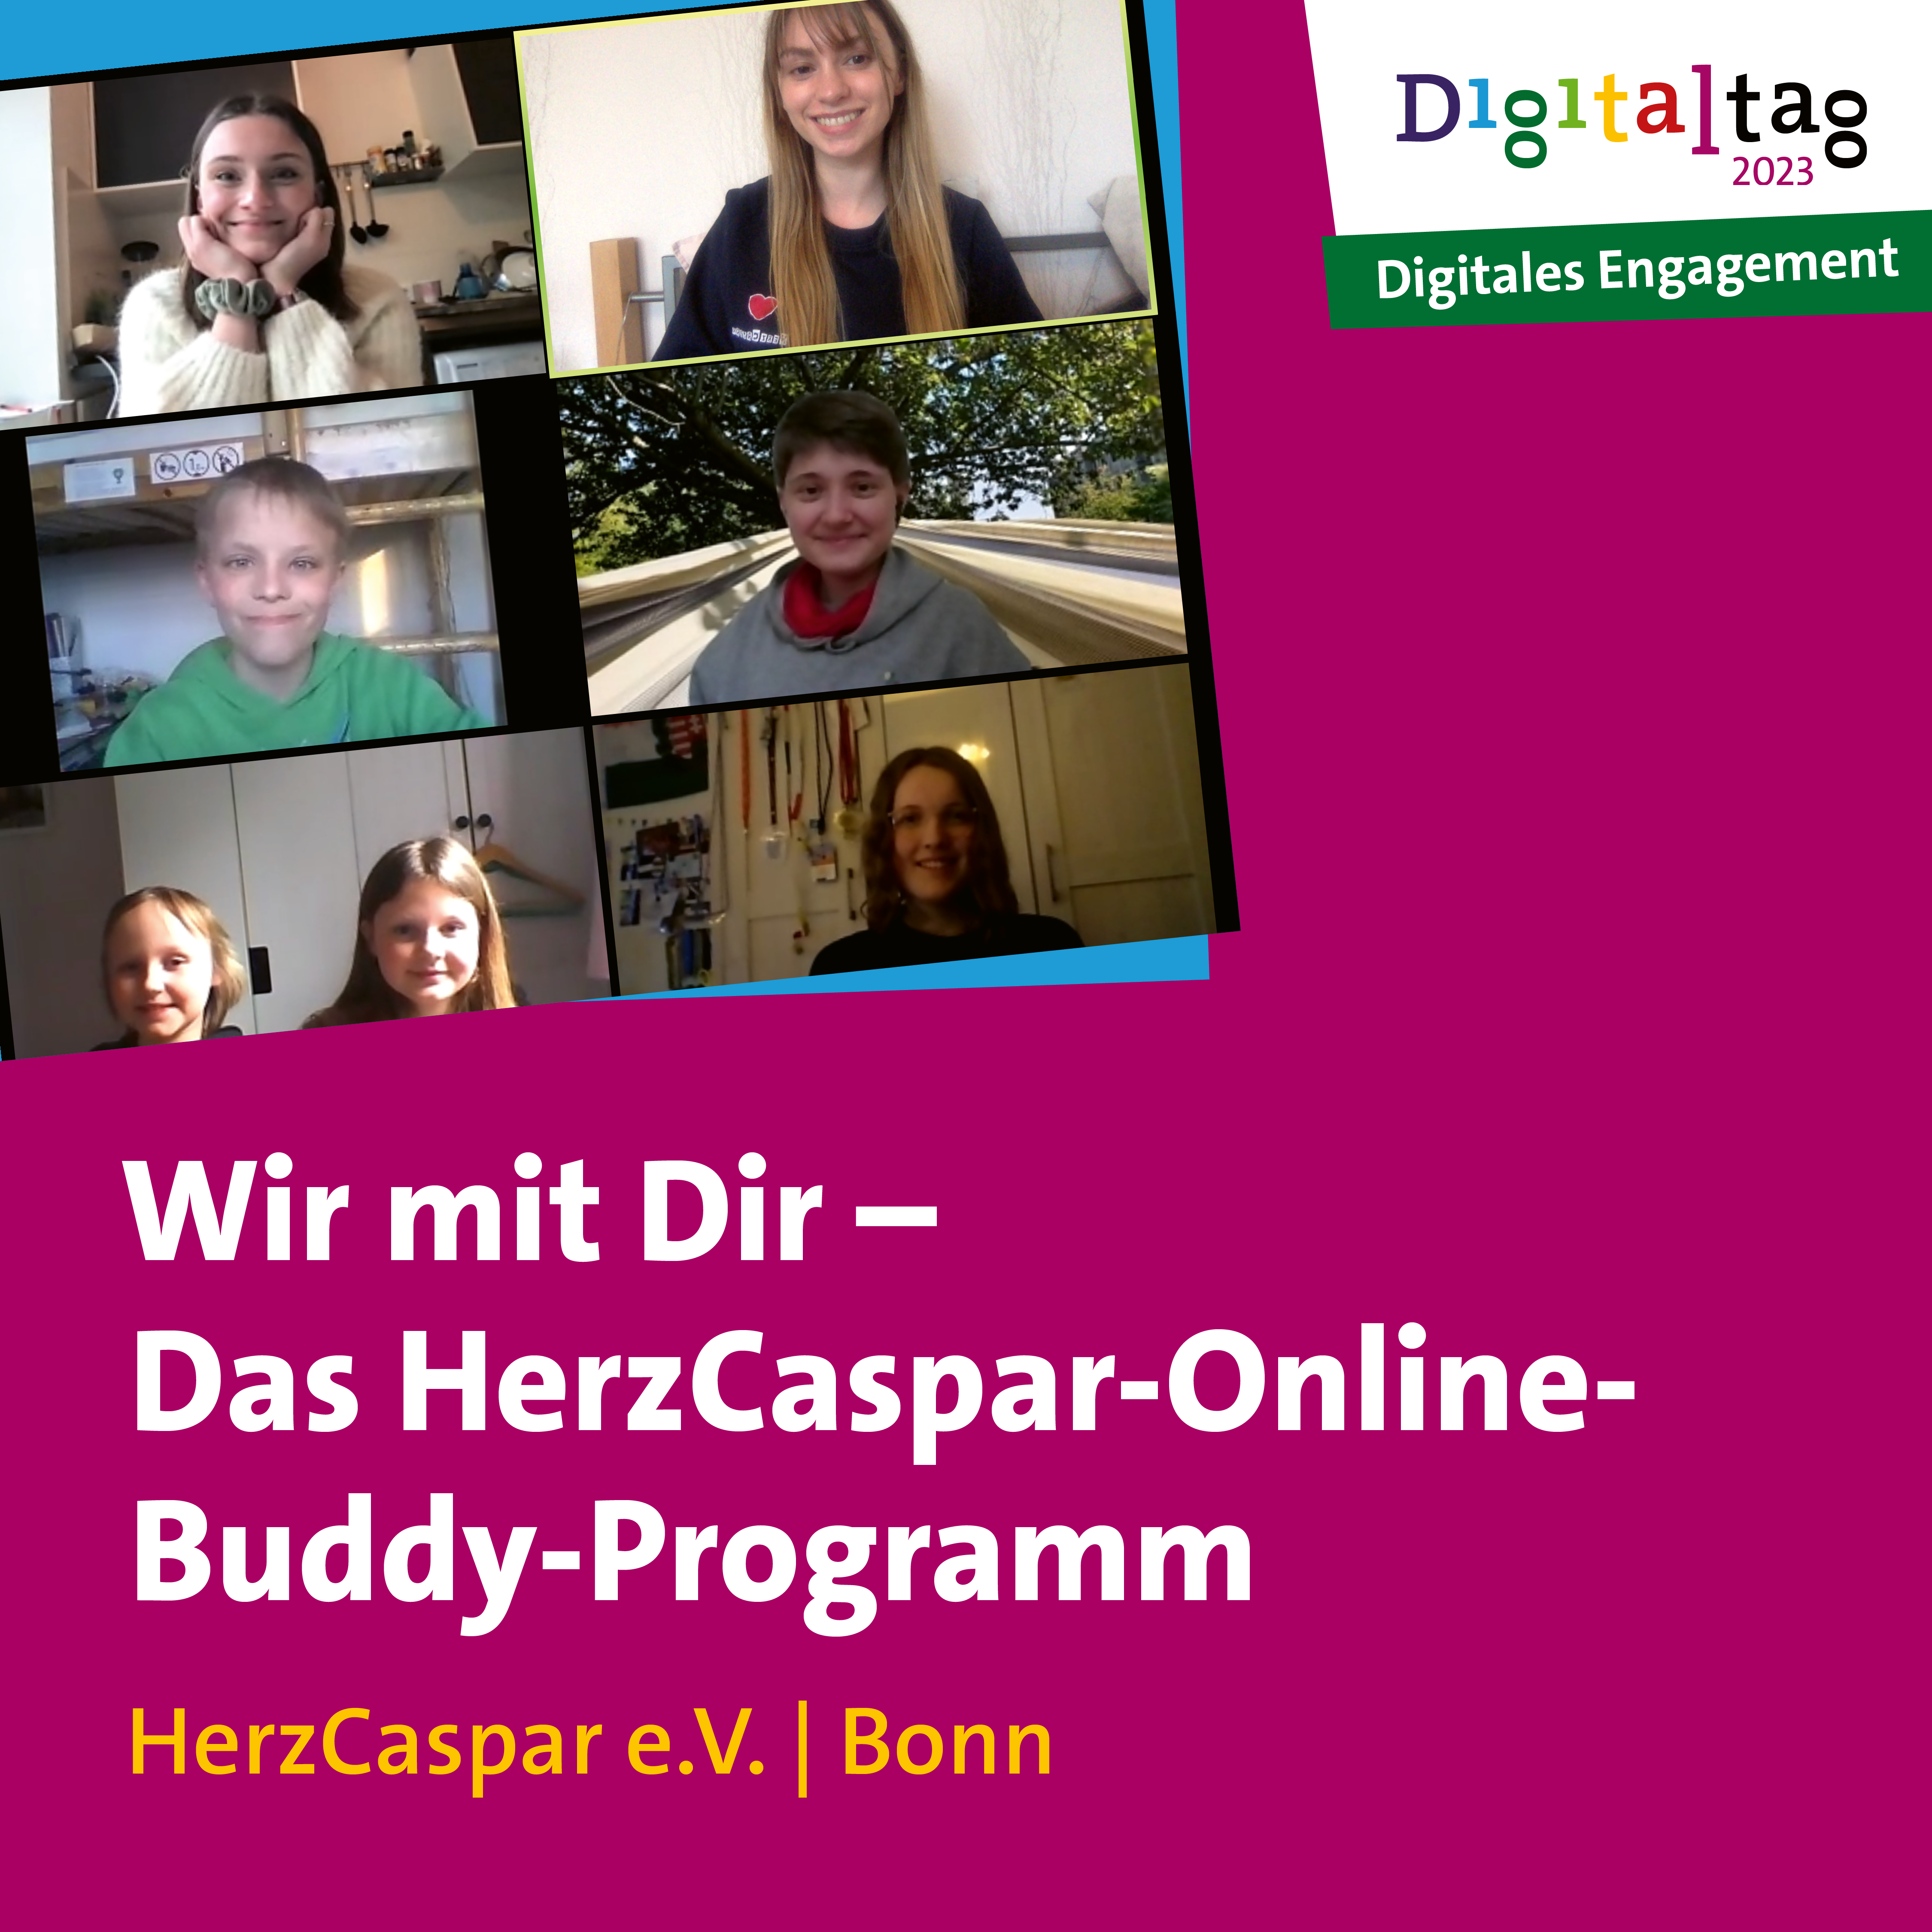 Foto von einem Online-Meeting von HerzCaspar; Text: Wir mit Dir – Das HerzCaspar-Online-Buddy-Programm, HerzCaspar e.V. in Bonn